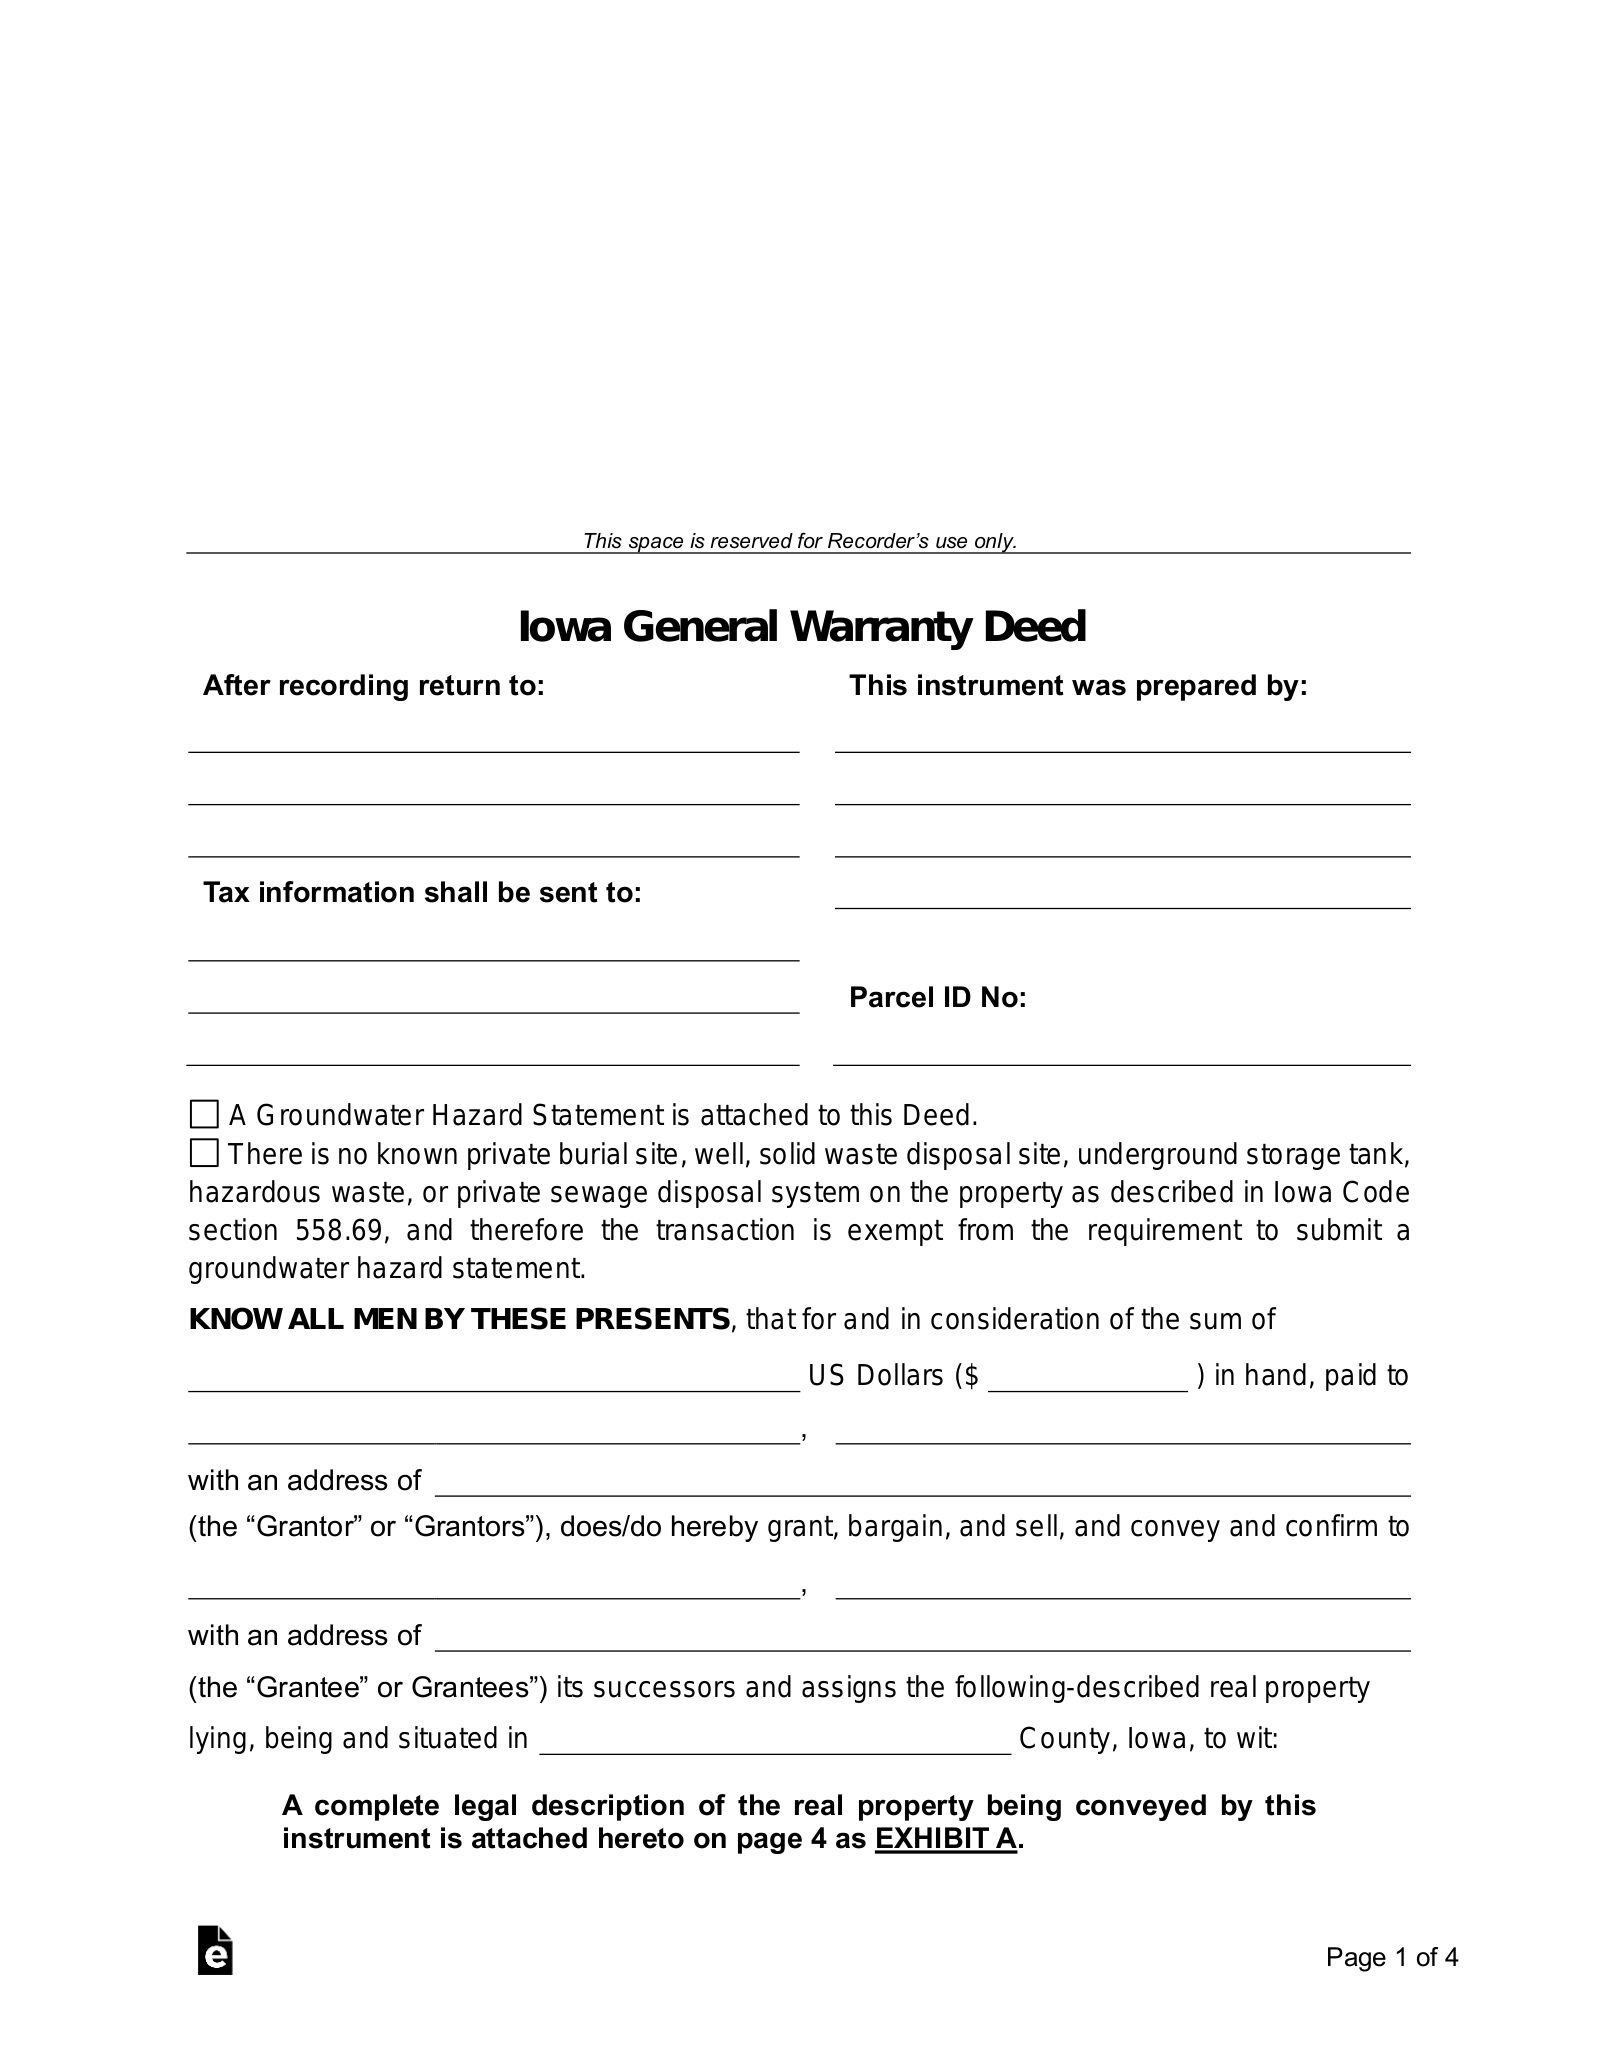 Iowa General Warranty Deed Form